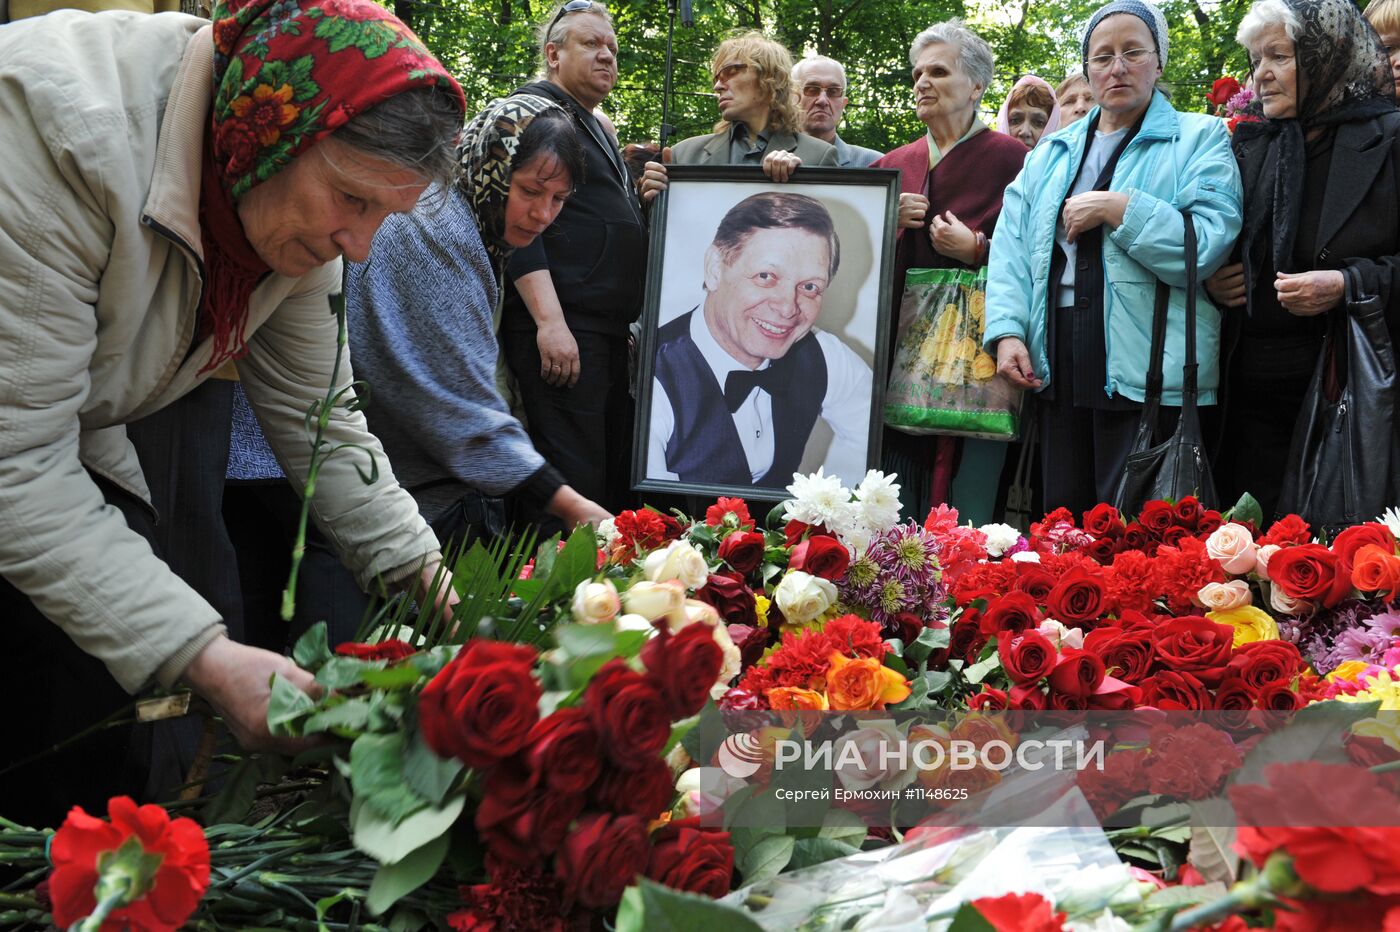 Похороны певца Эдуарда Хиля в Санкт-Петербурге